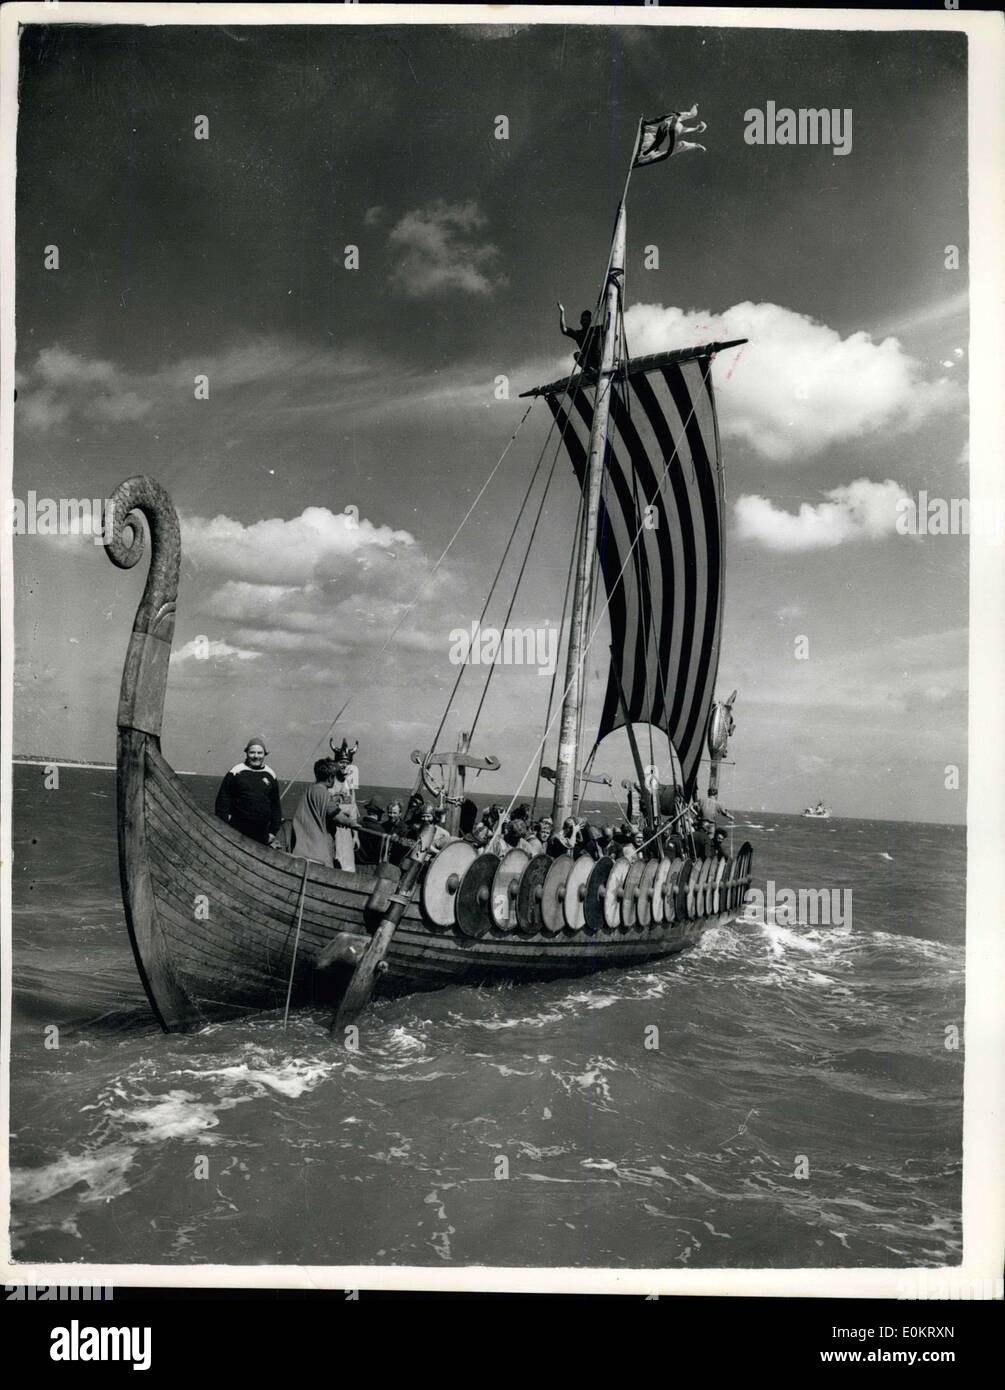 Juillet 28, 1949 - Les Danois ''envahir l'Angleterre ... Navire Viking, Hugin arrive à Boadstairs. La photo montre la vue de la ''Hugin'' sous le sol de 6,5 kilomètres de roadstairs quand abrived pour ''l'Invasion''aujourd'hui. Banque D'Images